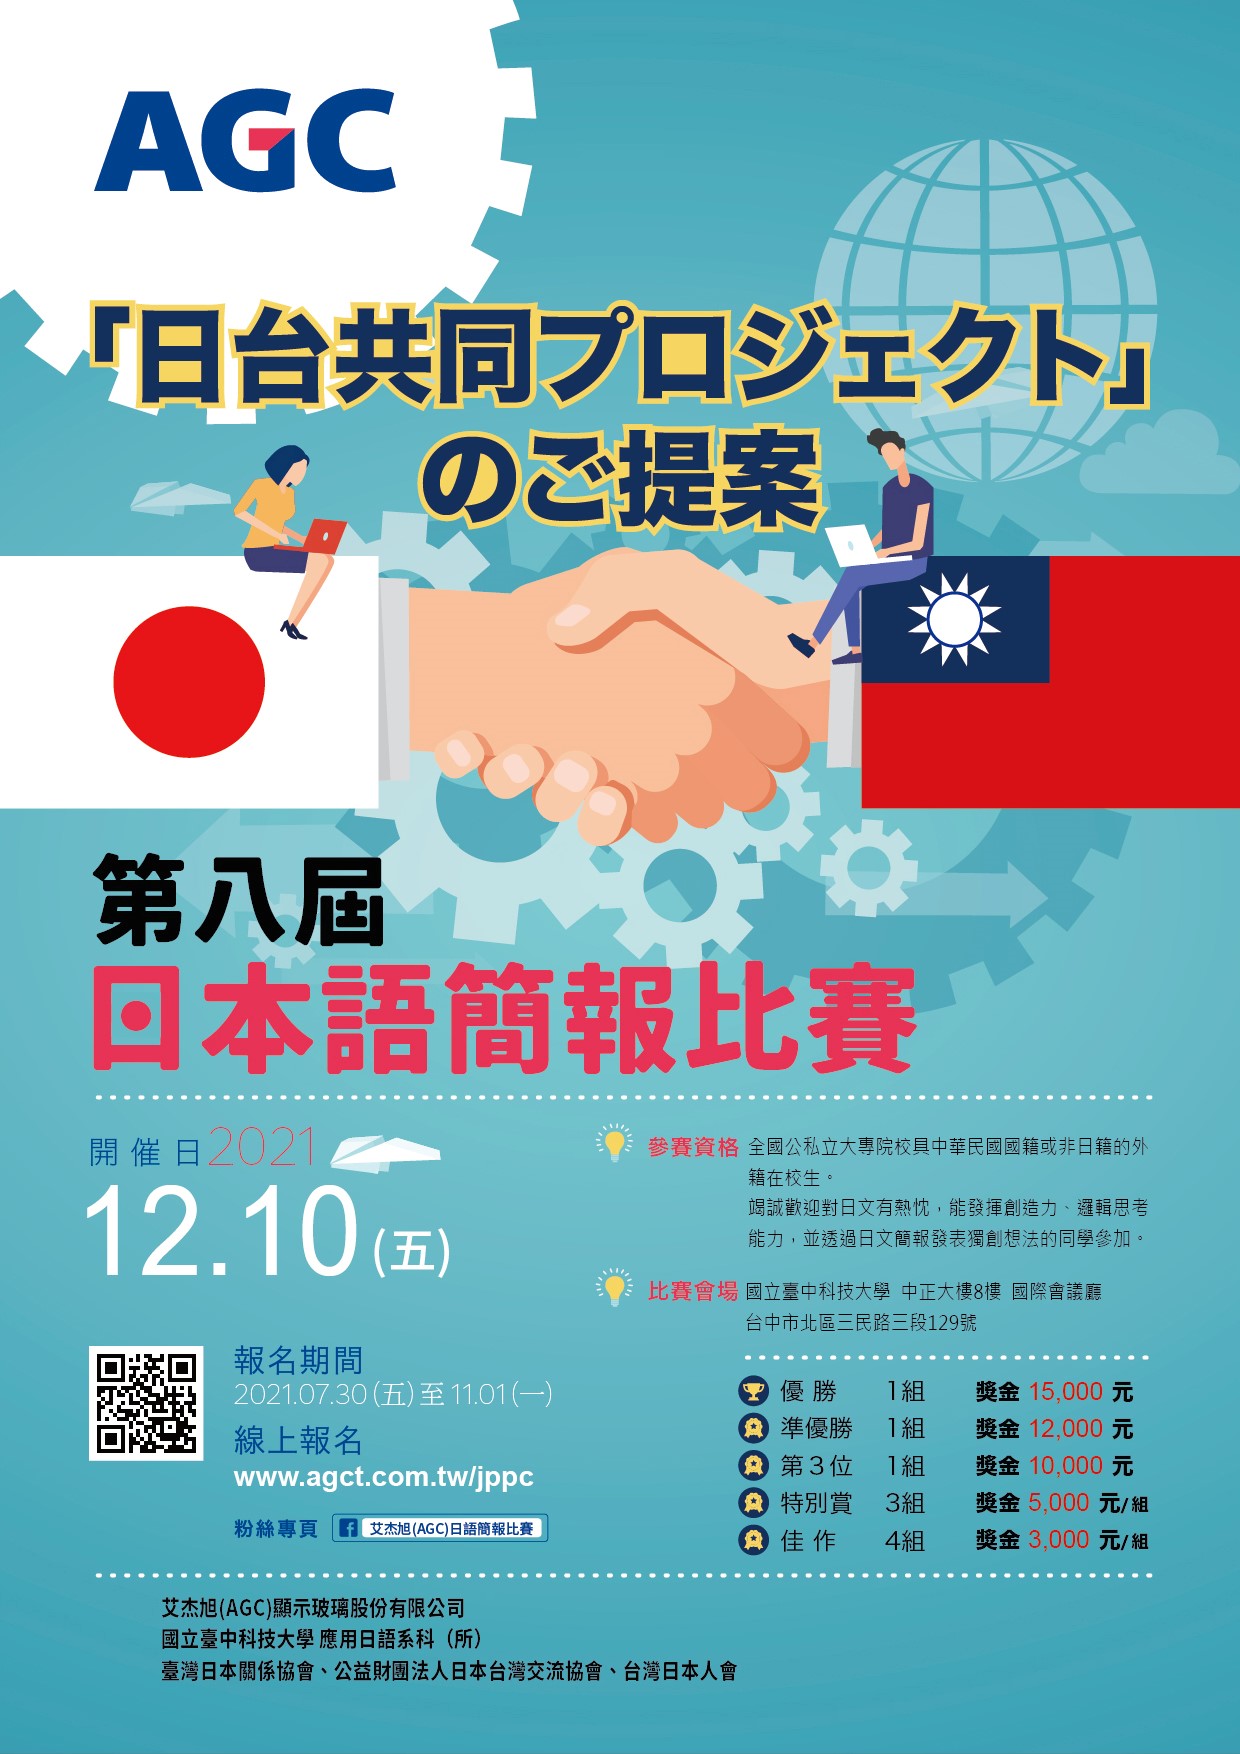 【比賽資訊】2021年「AGC第八屆日語簡報比賽」